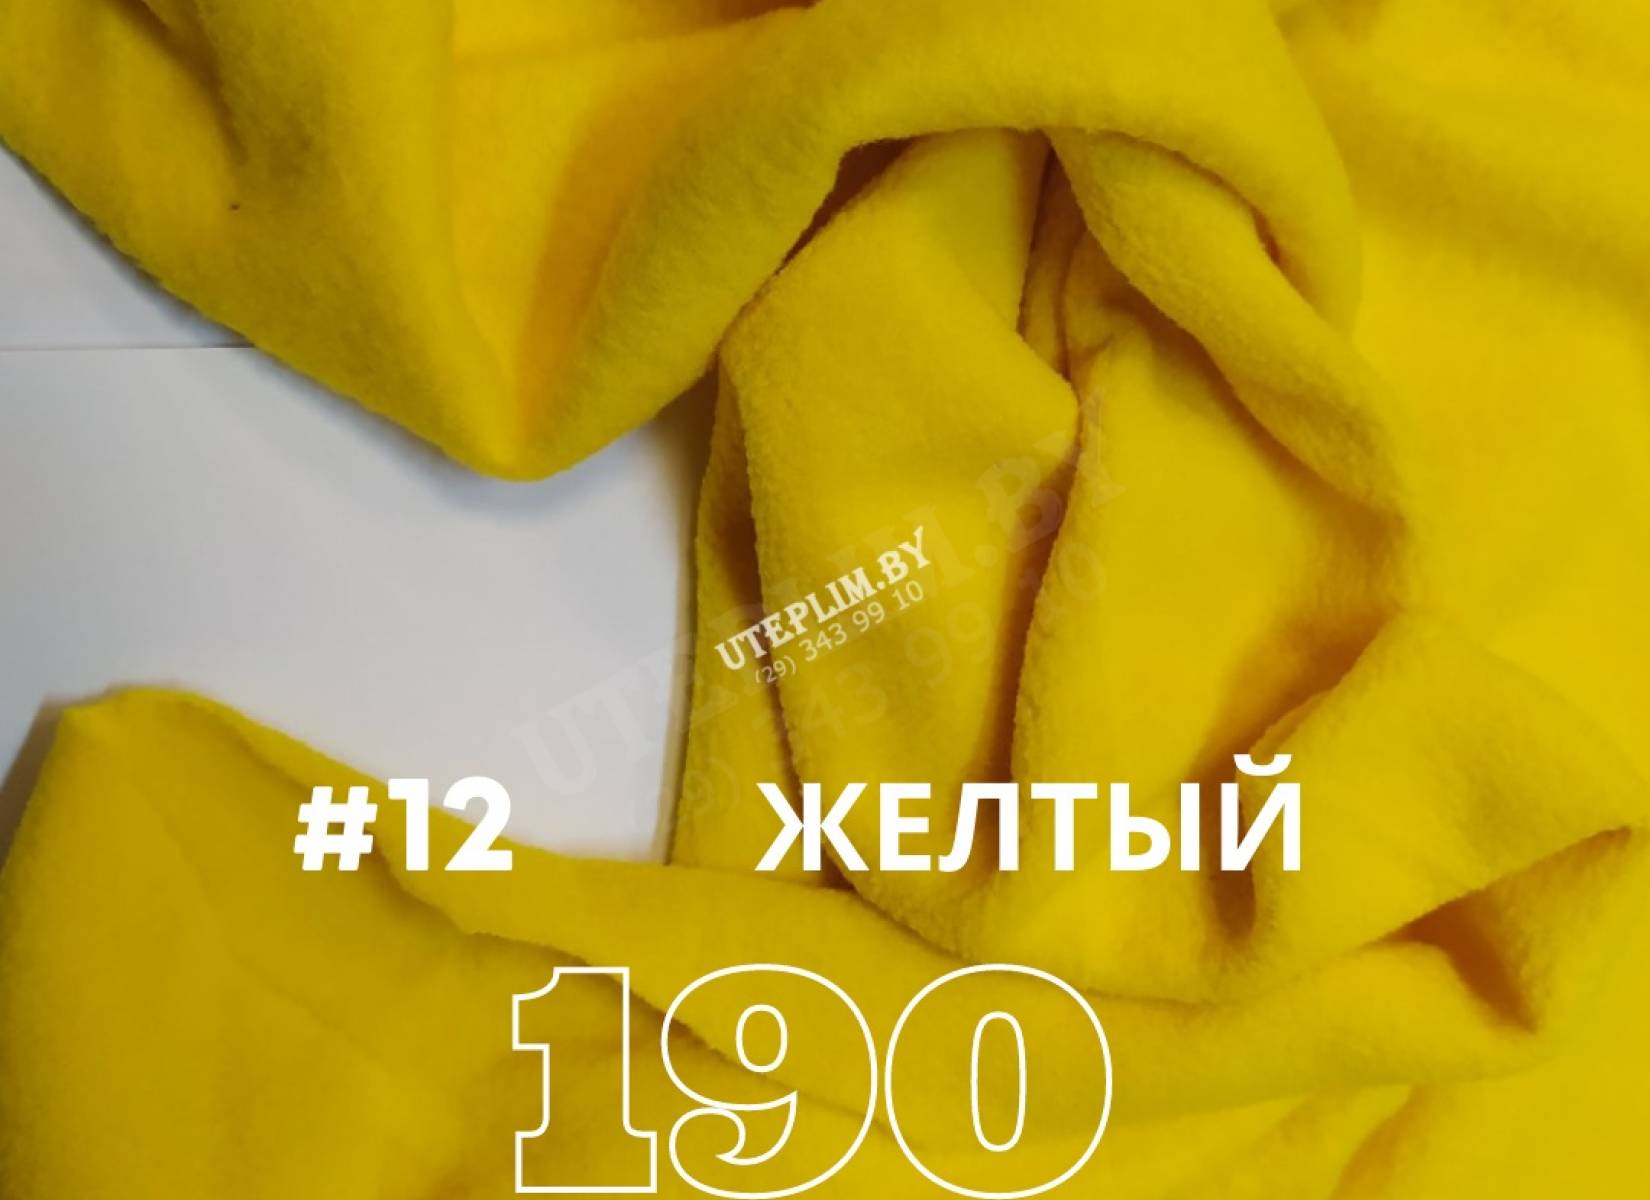 190 антипиллинг - желтый